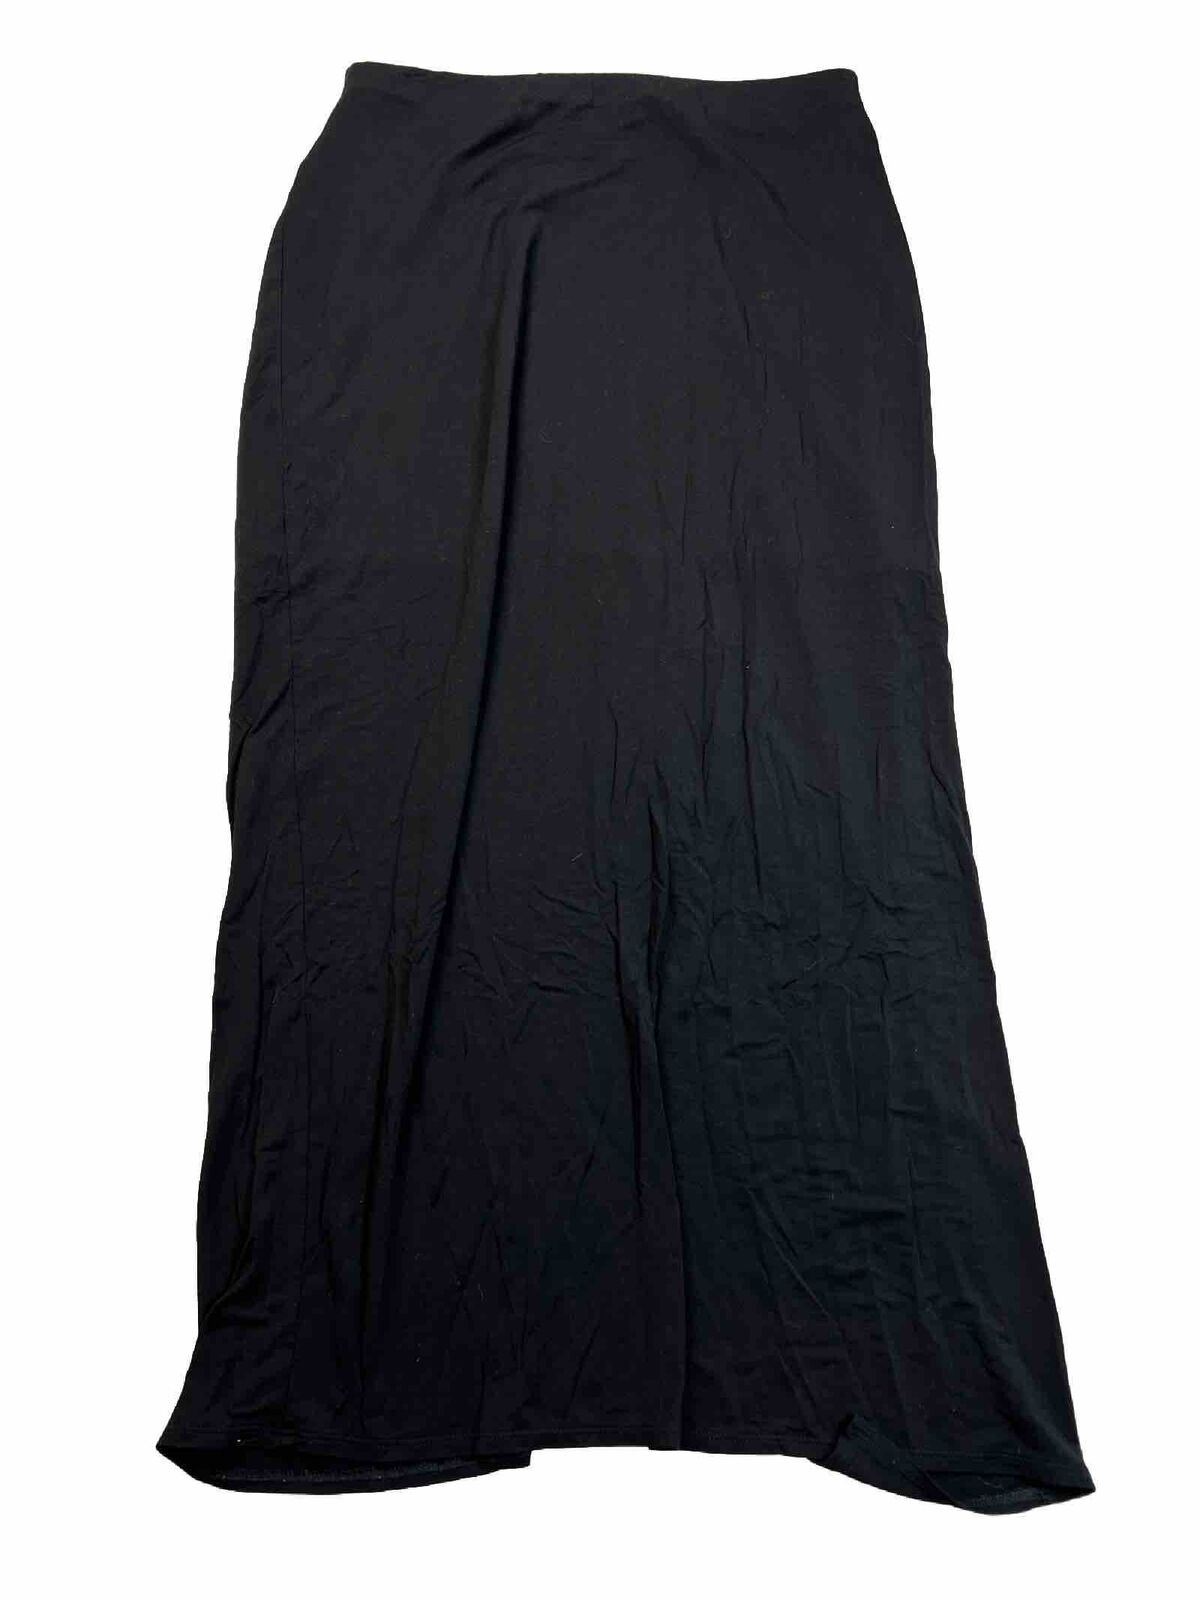 White House Black Market Women's Black Slit Front Maxi Skirt - M